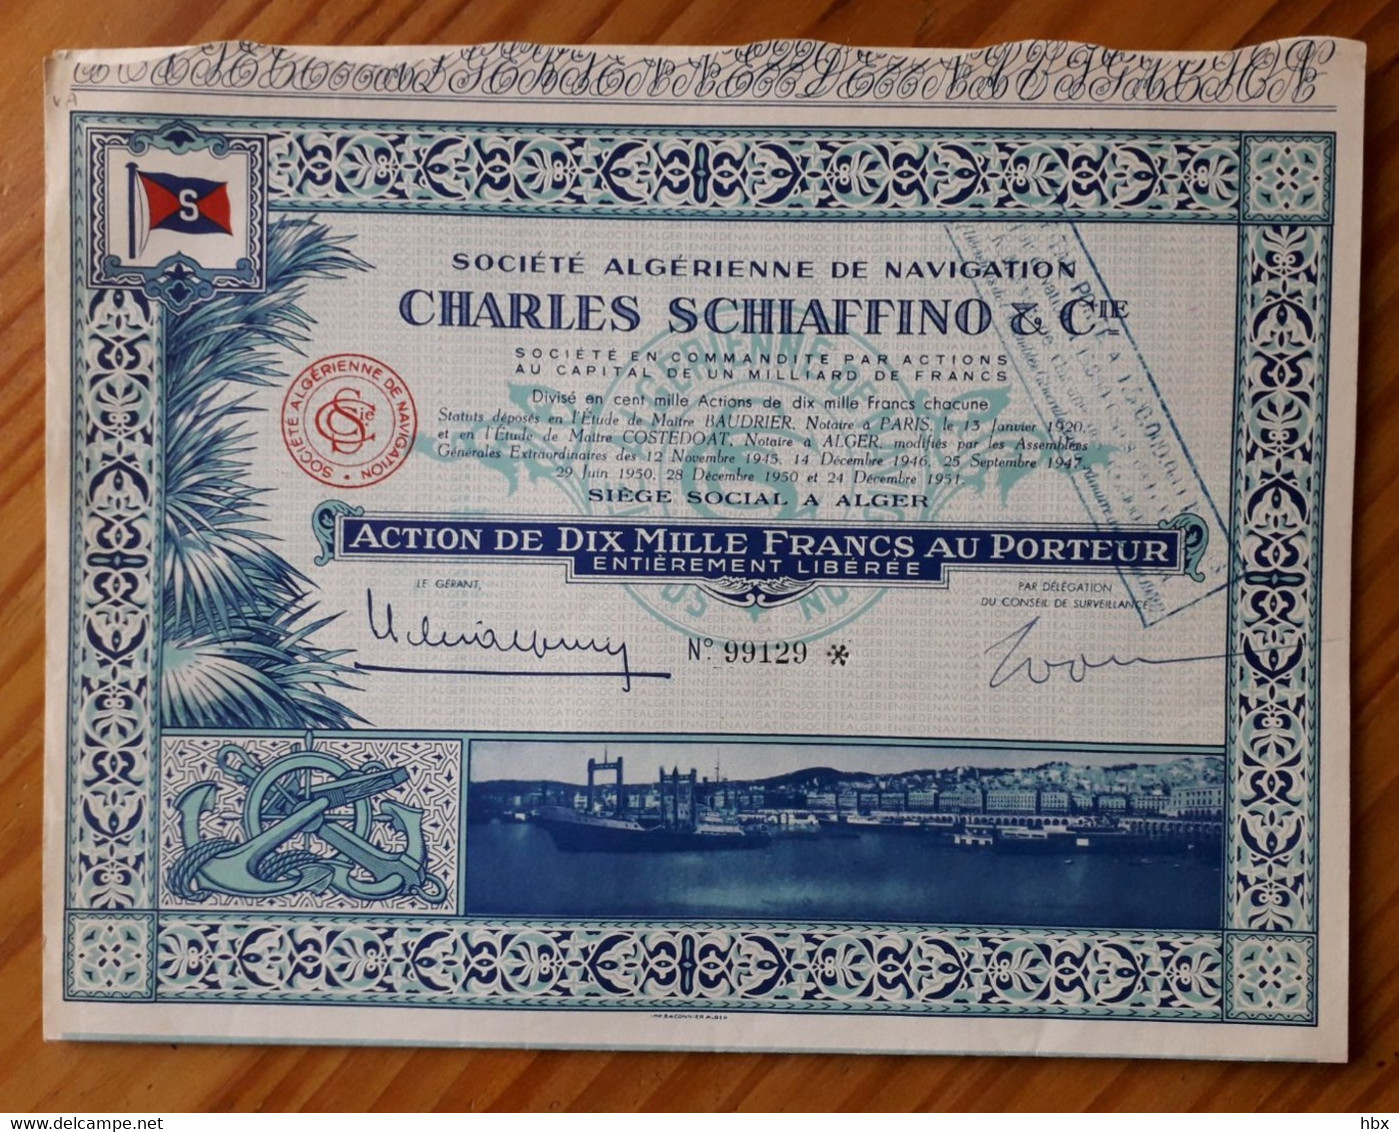 Société Algérienne De Navigation Charles Schiaffino & Cie. - 1951 - Navigation